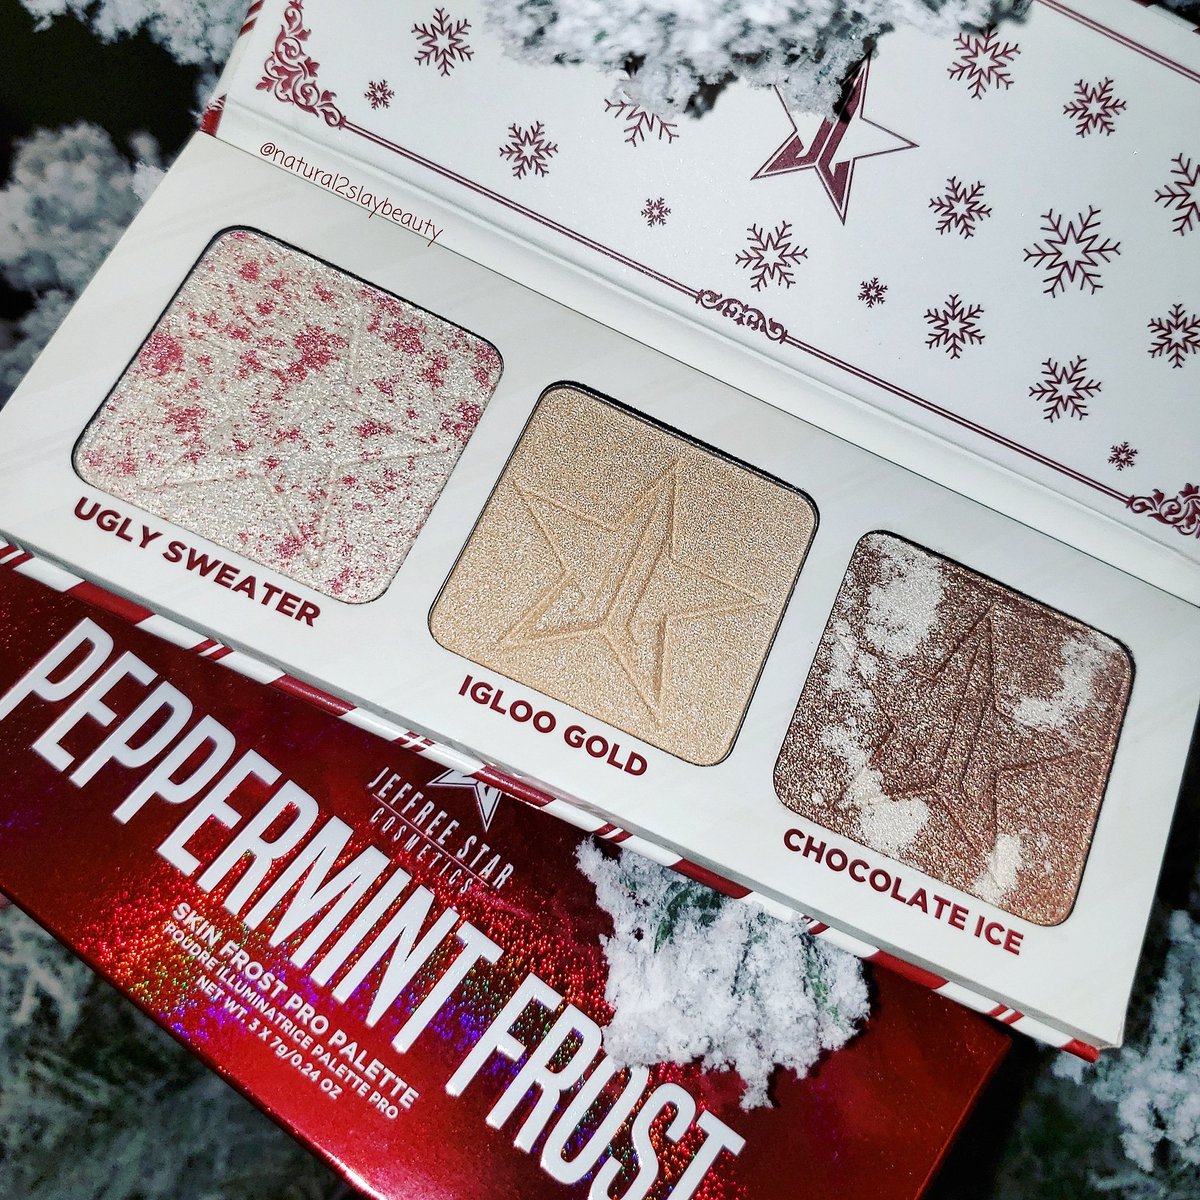 #PeppermintFrost ❄🥶 It smells as good as it looks 😋

#SkinFrost #JeffreeStarCosmetics